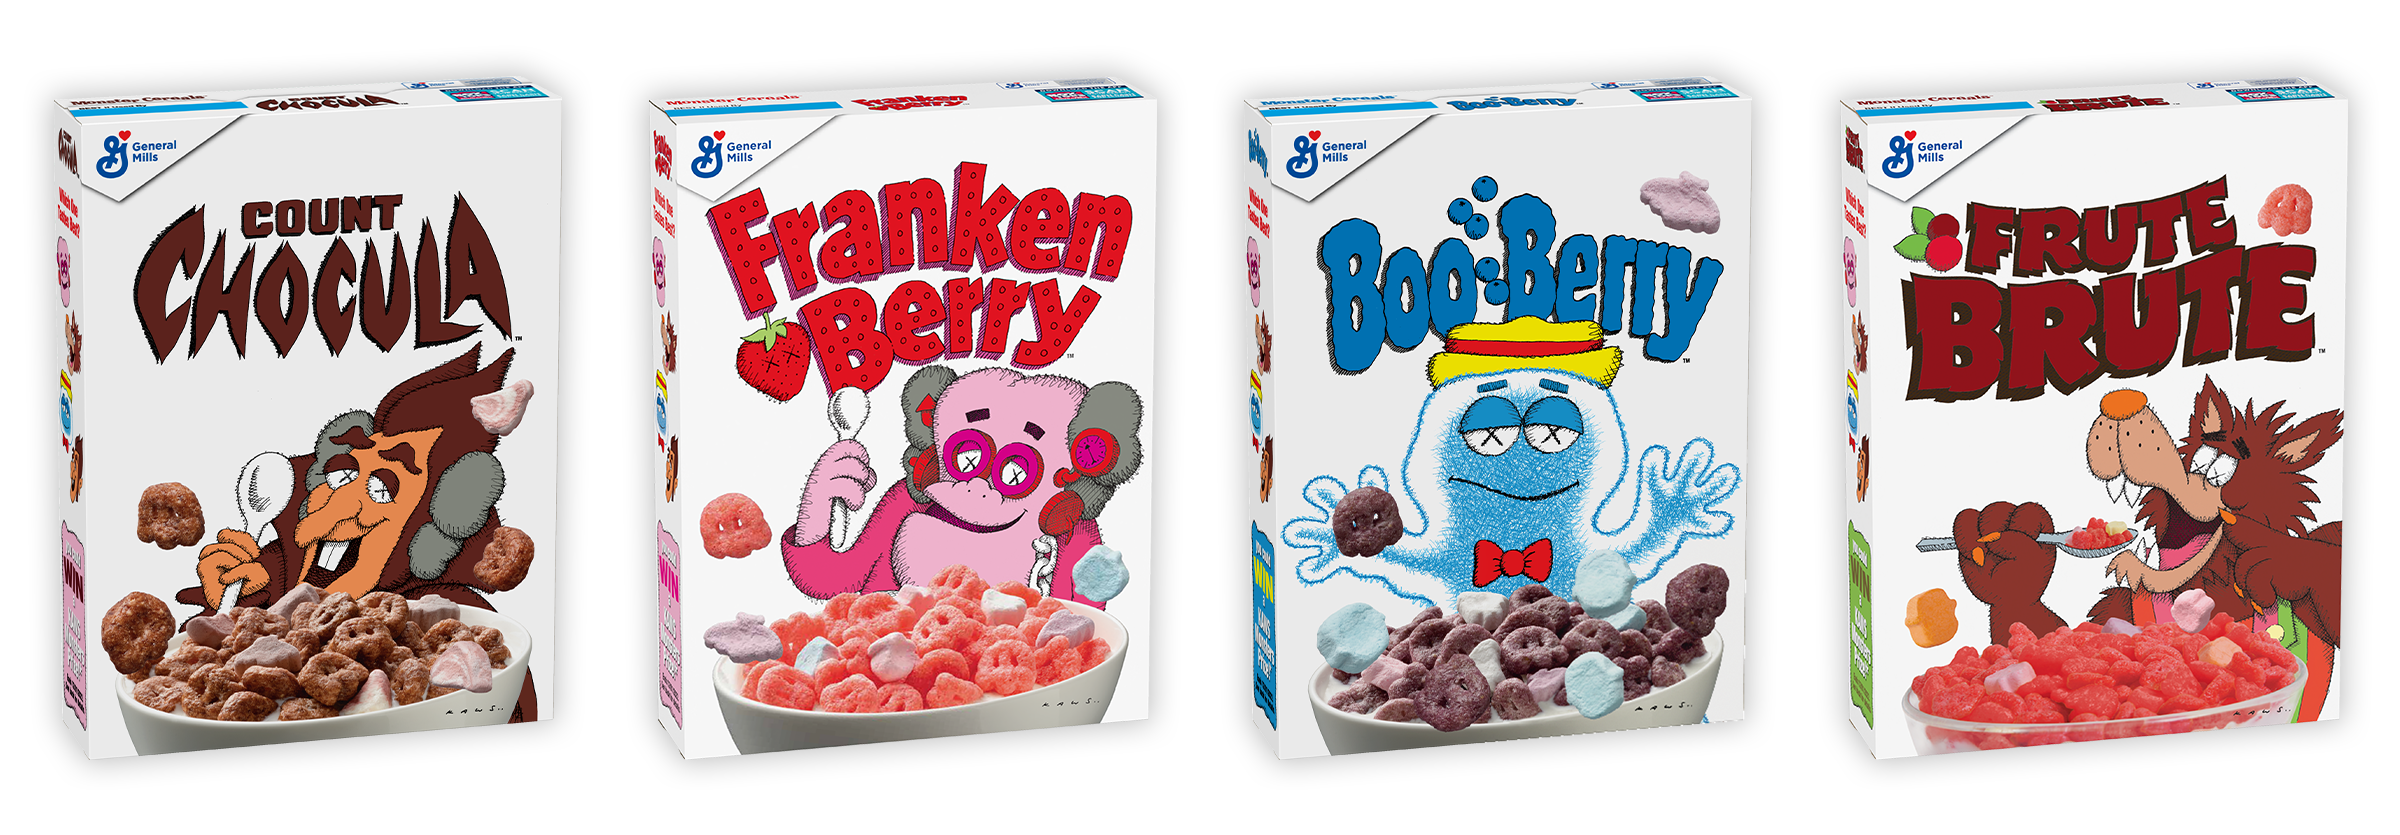 General Mills' Monster Cereals return in KAWS-designed boxes 